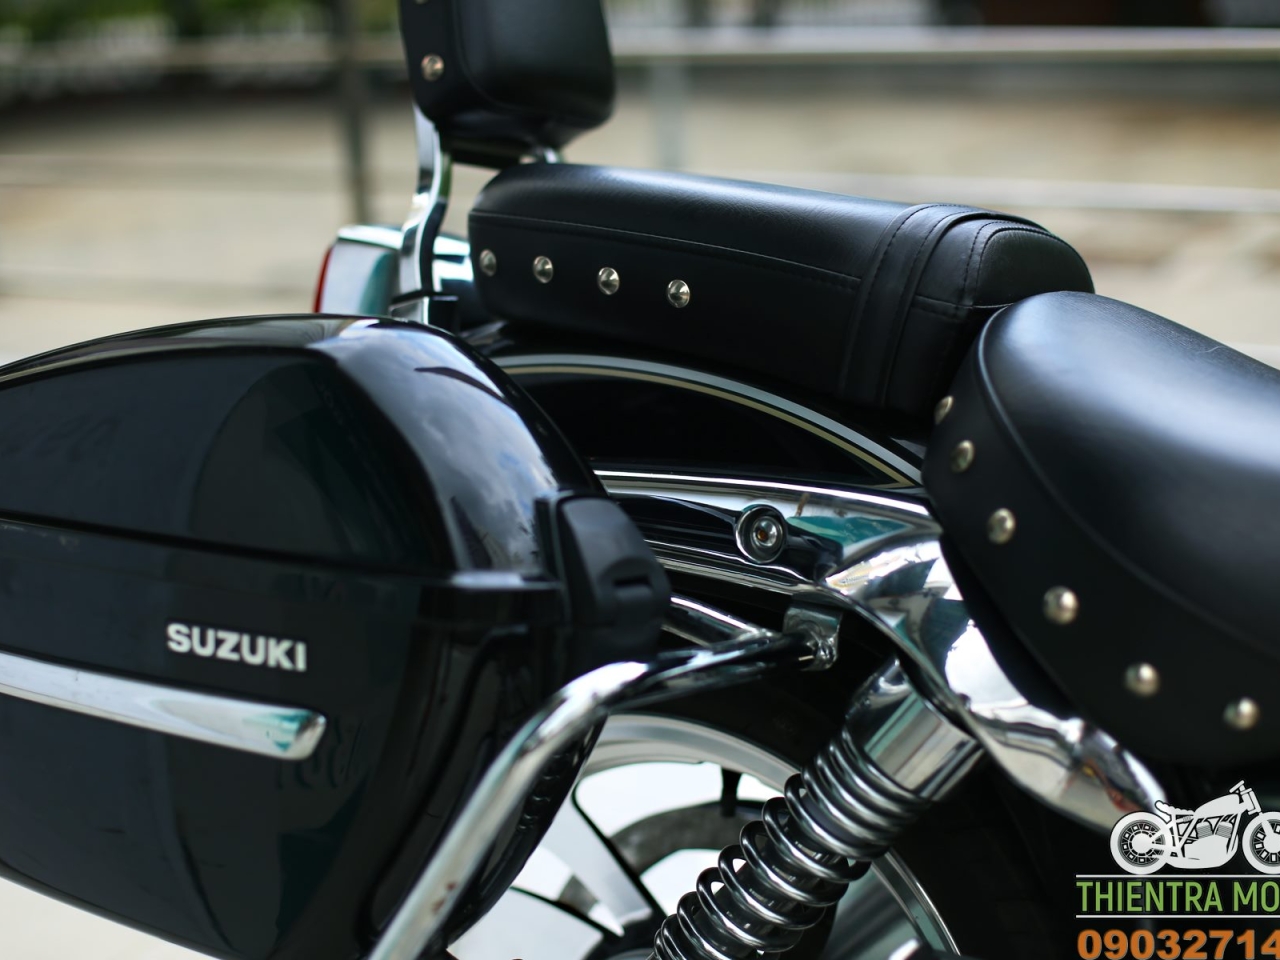 186. Suzuki GZ150 2020